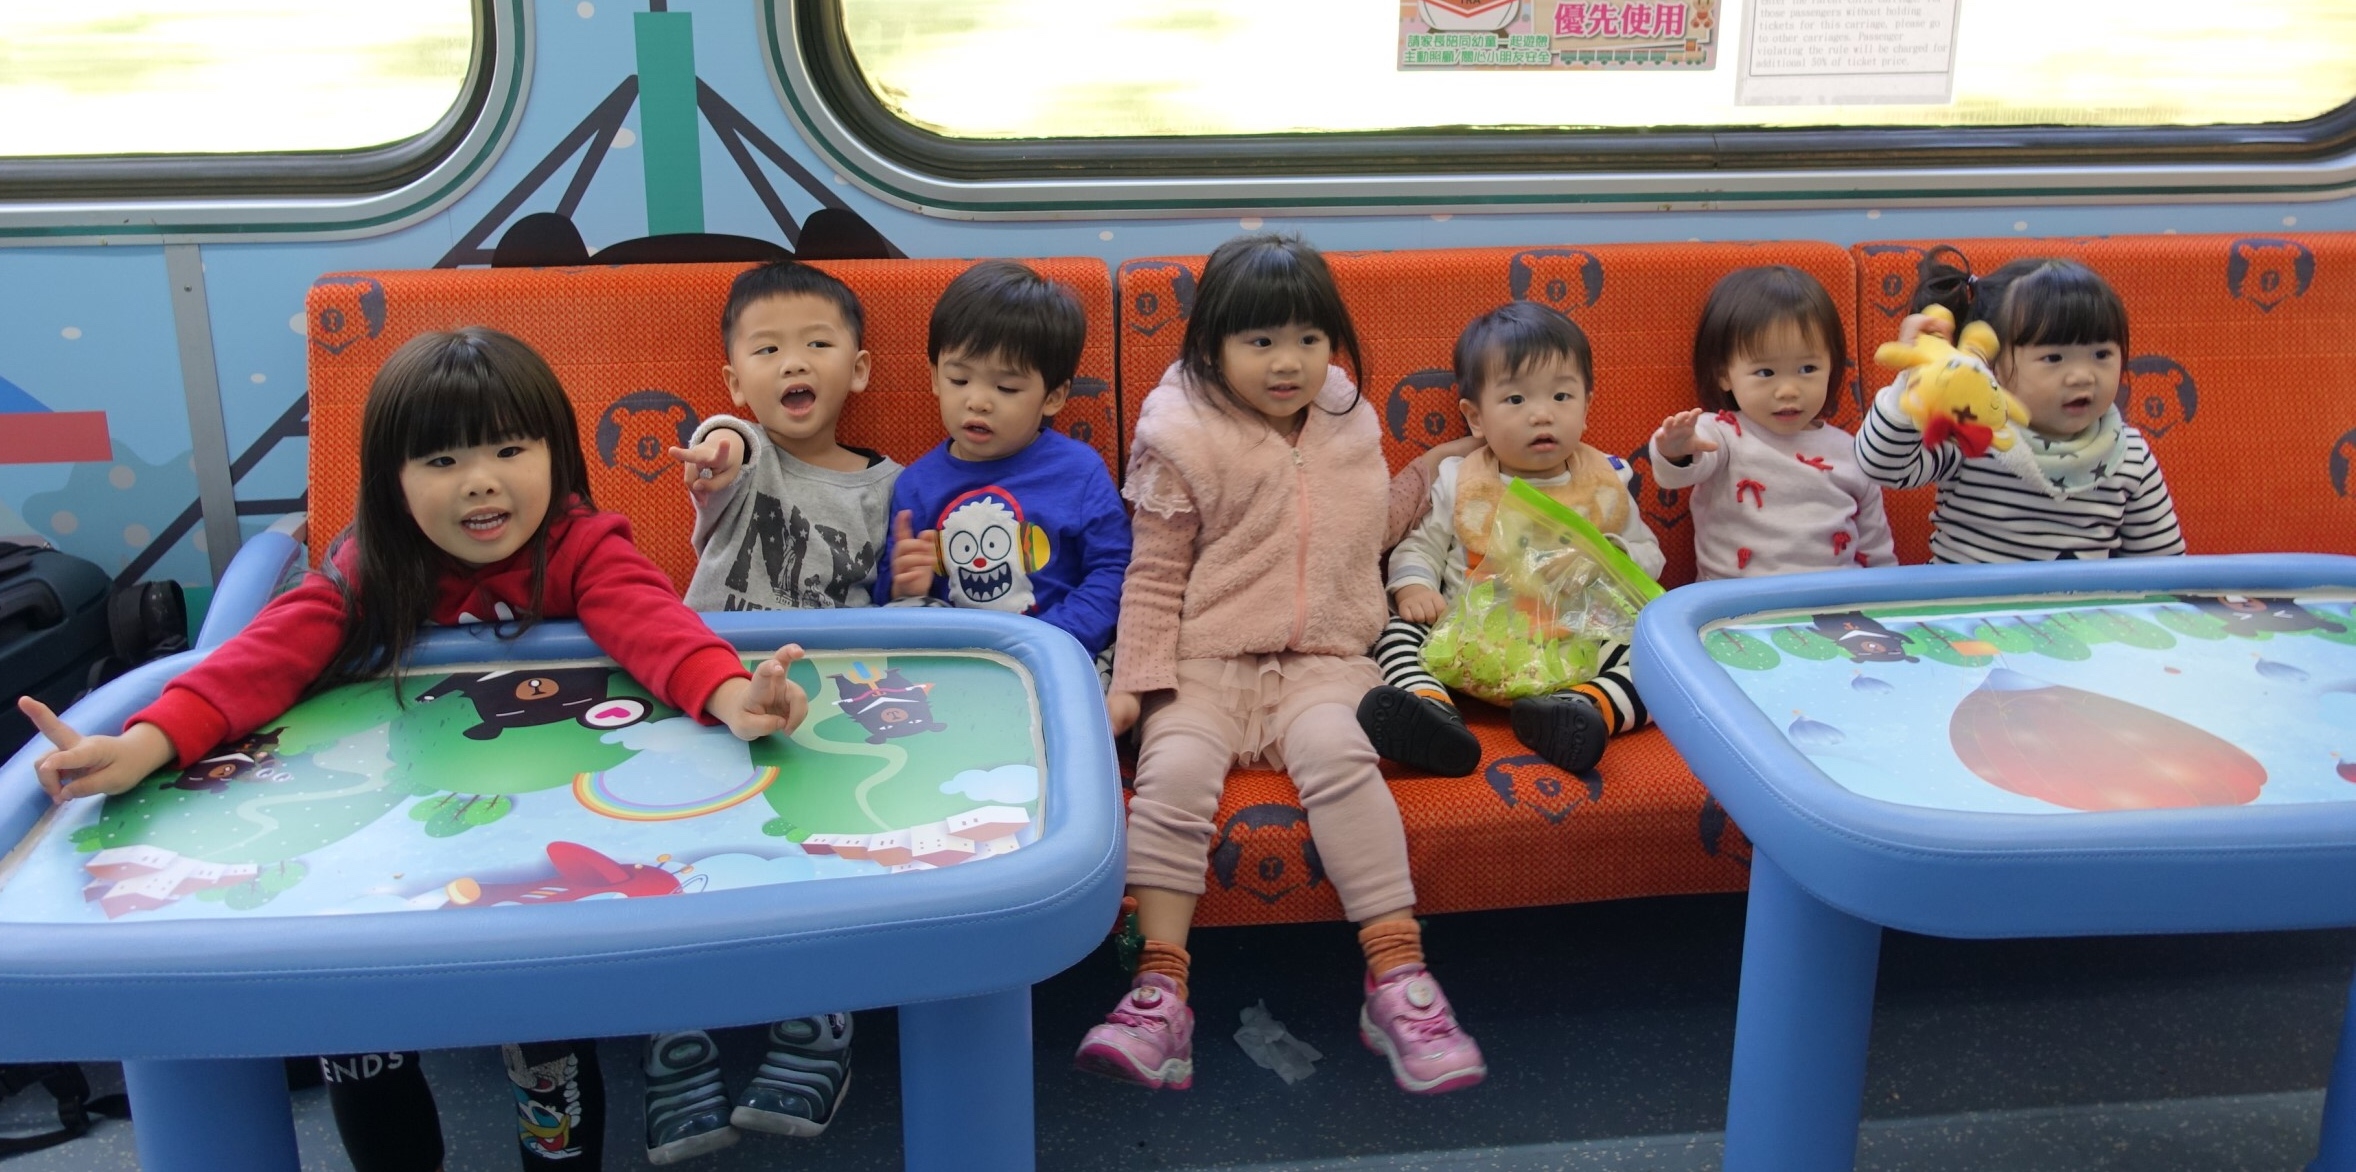 【2019 交通攻略】不怕孩子吵鬧的「台鐵親子車廂」申請方法與體驗心得